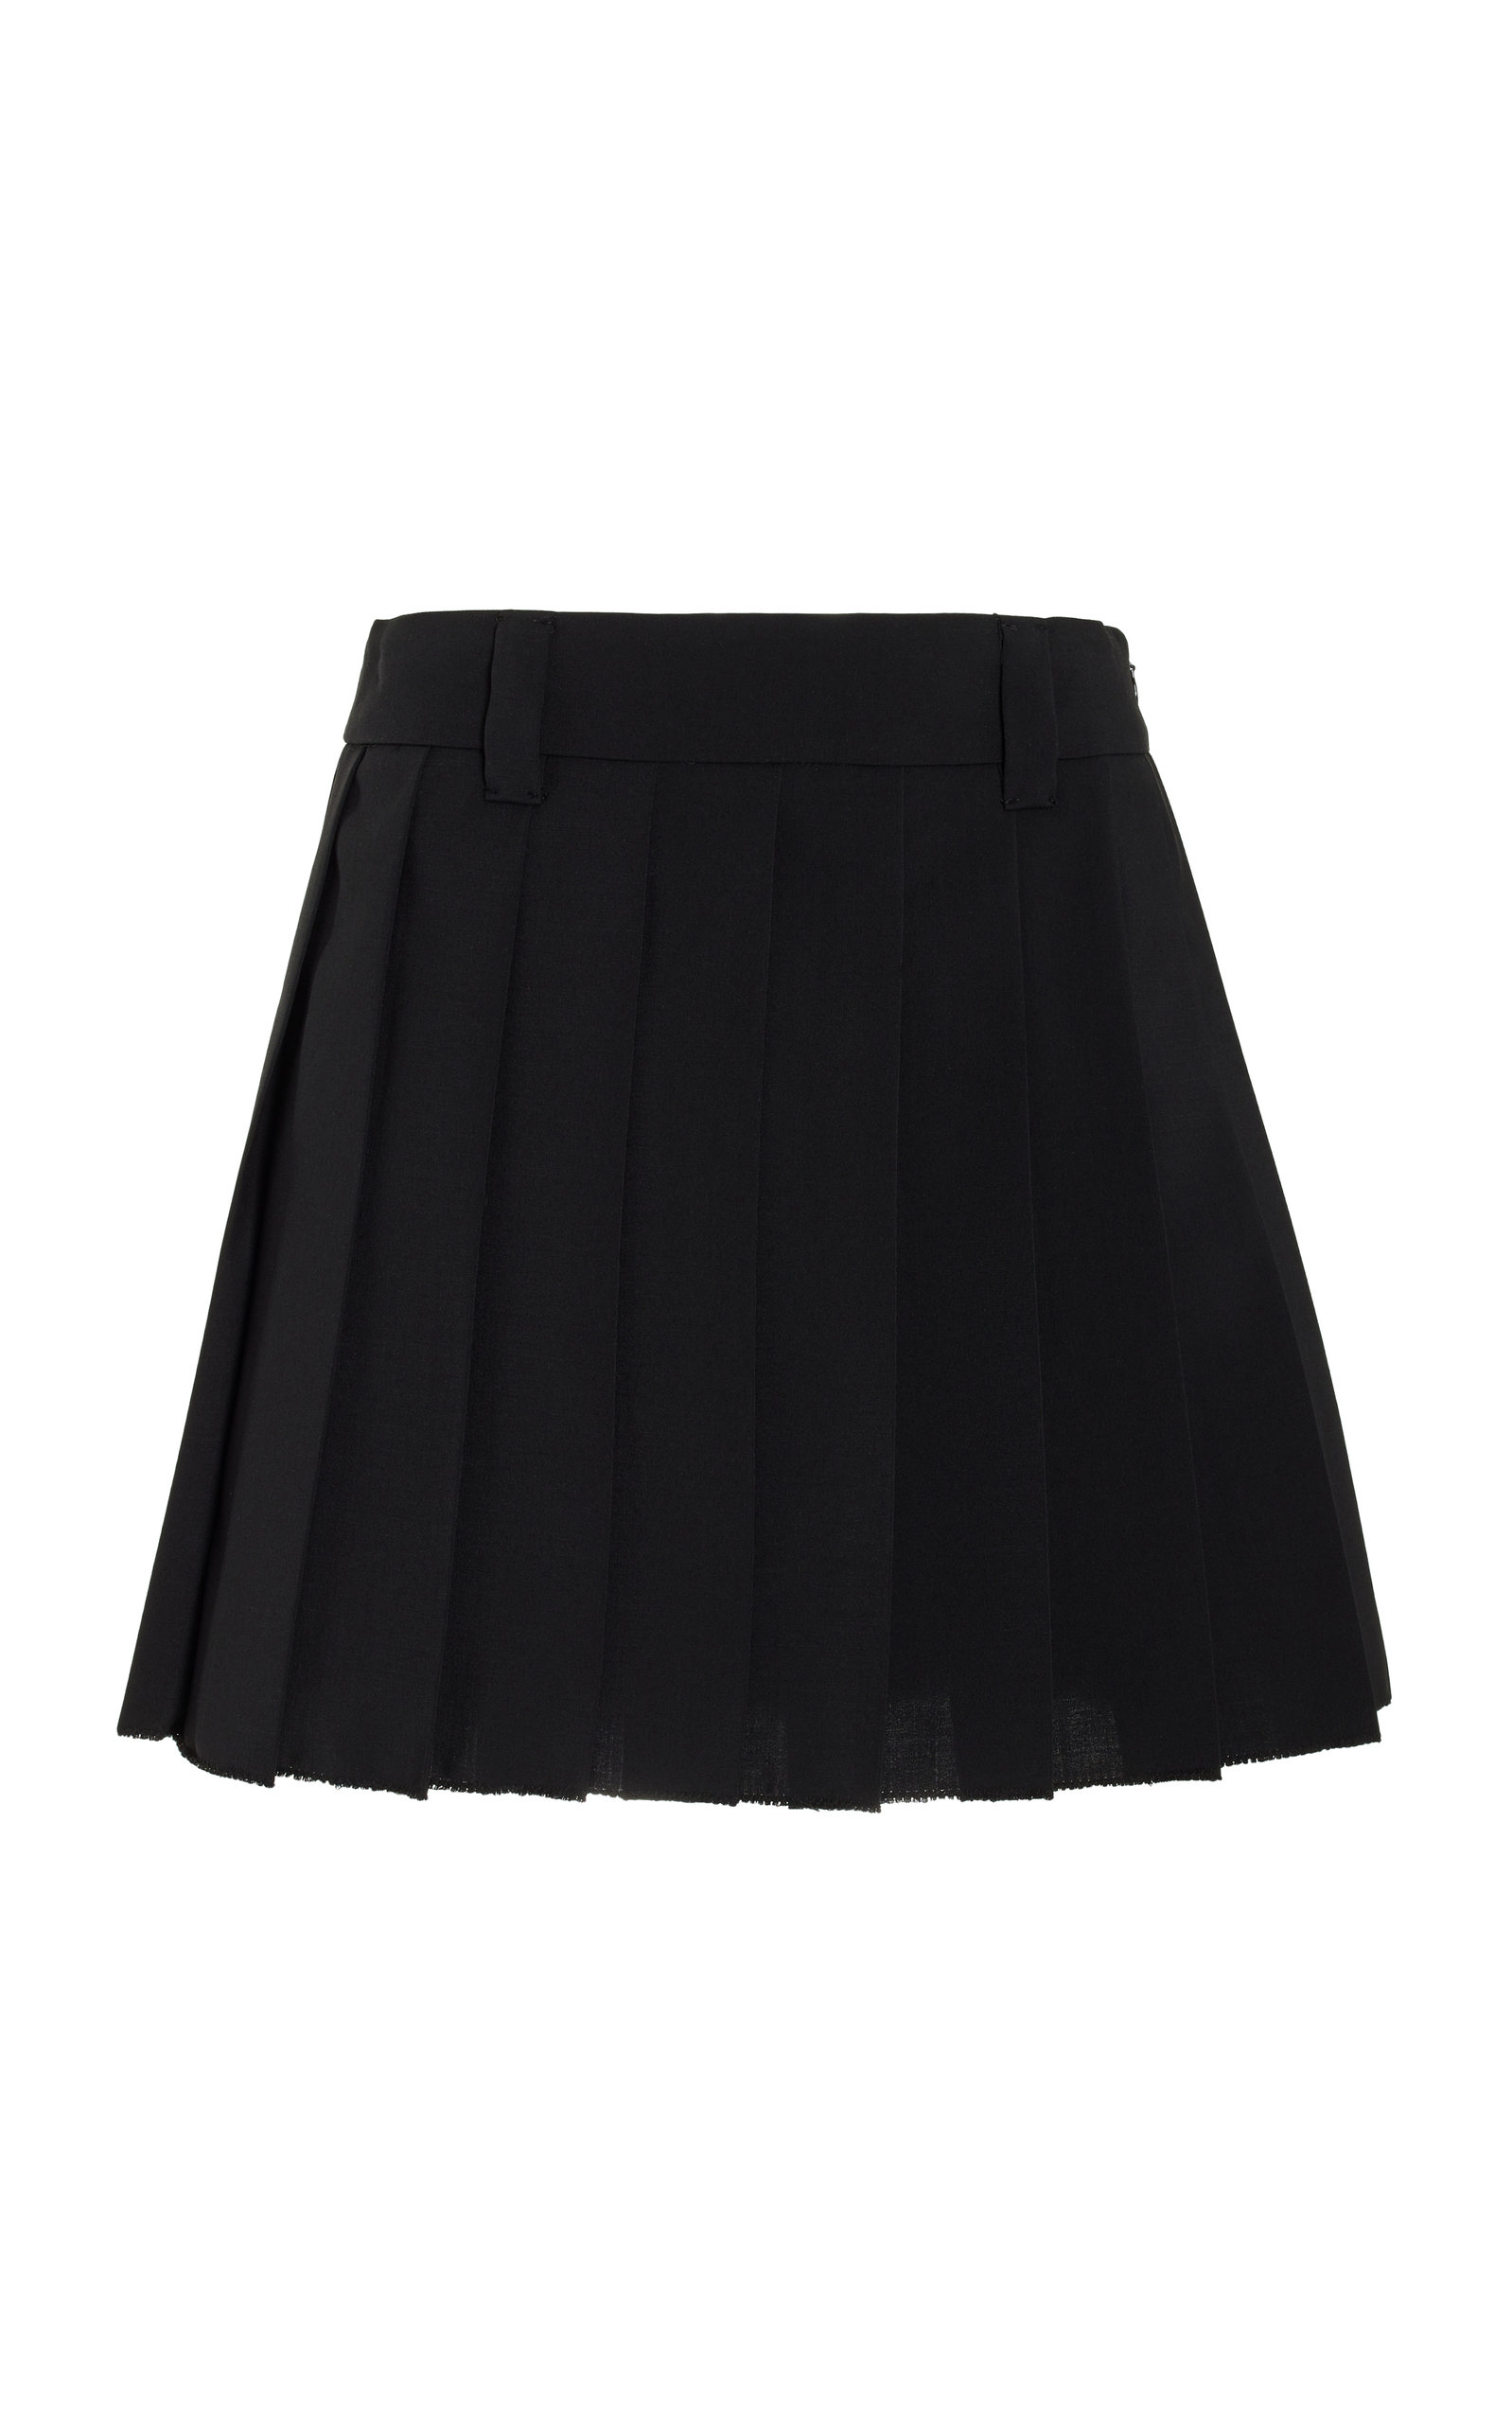 Miu Miu - Pleated Raw-Edge Mohair Mini Skirt - Black - IT 46 - Moda Operandi